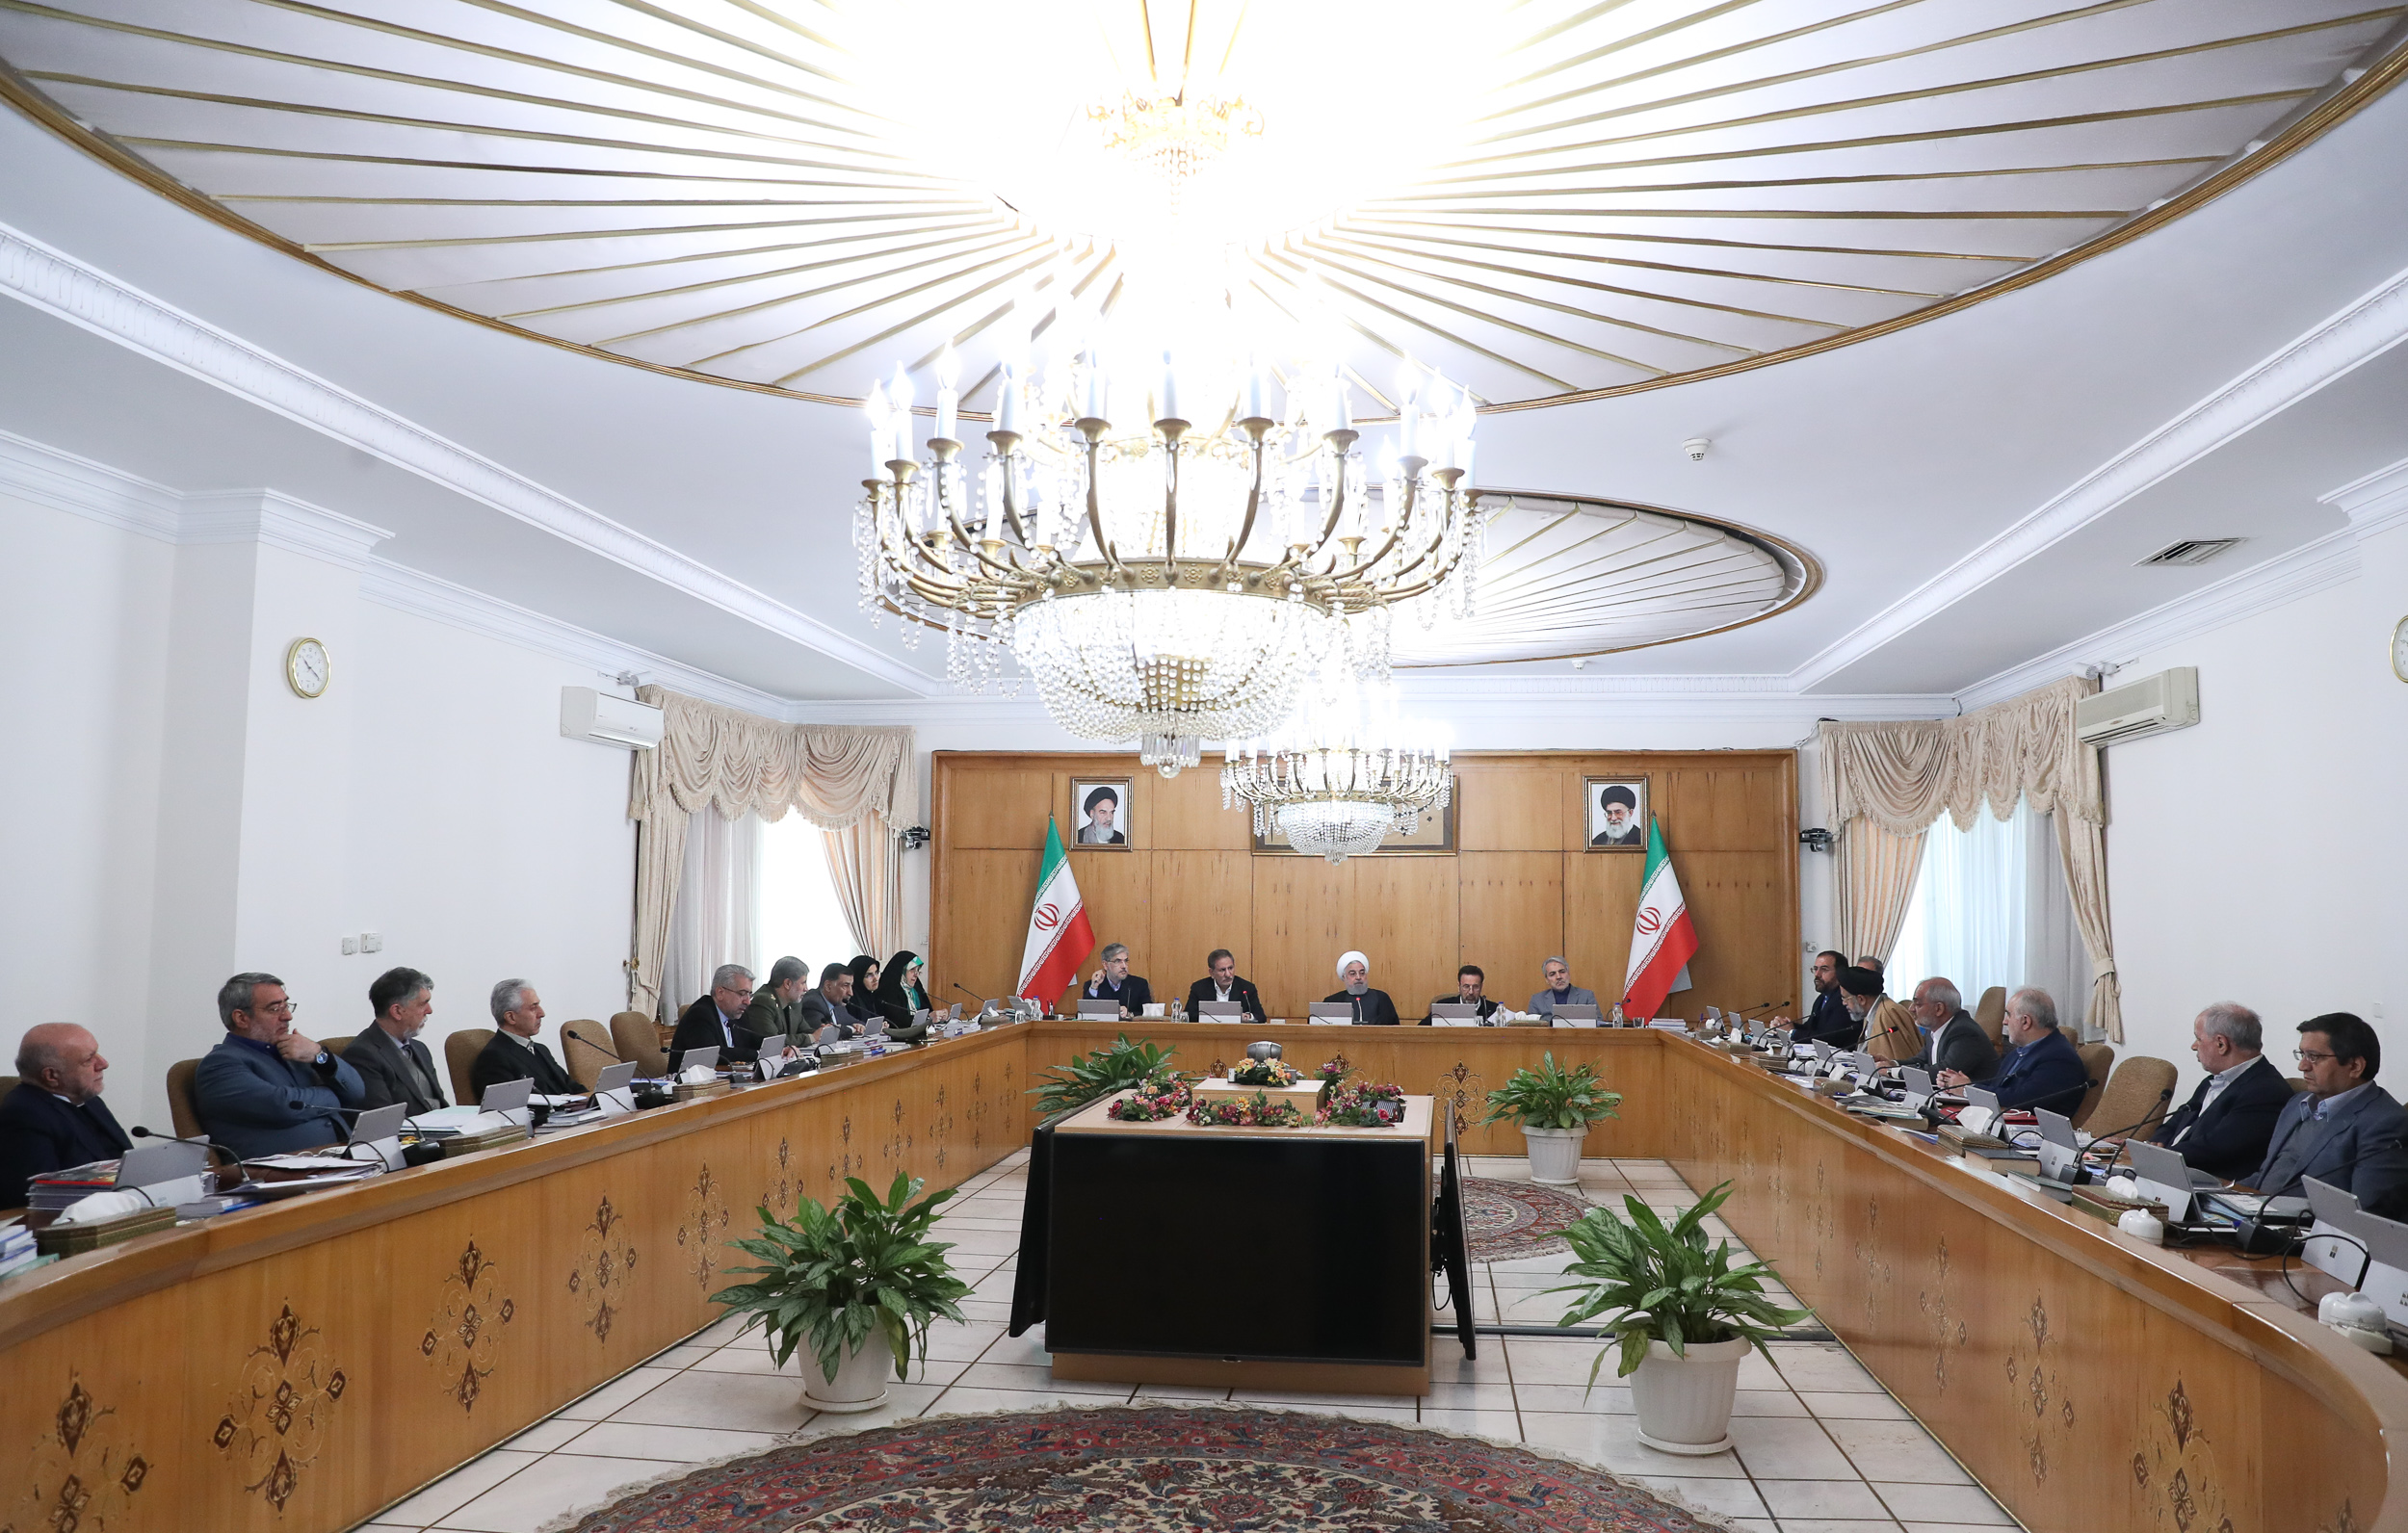 لایحه اصلاح قانون تعیین وظایف ریاست جمهوری روی میز دولت